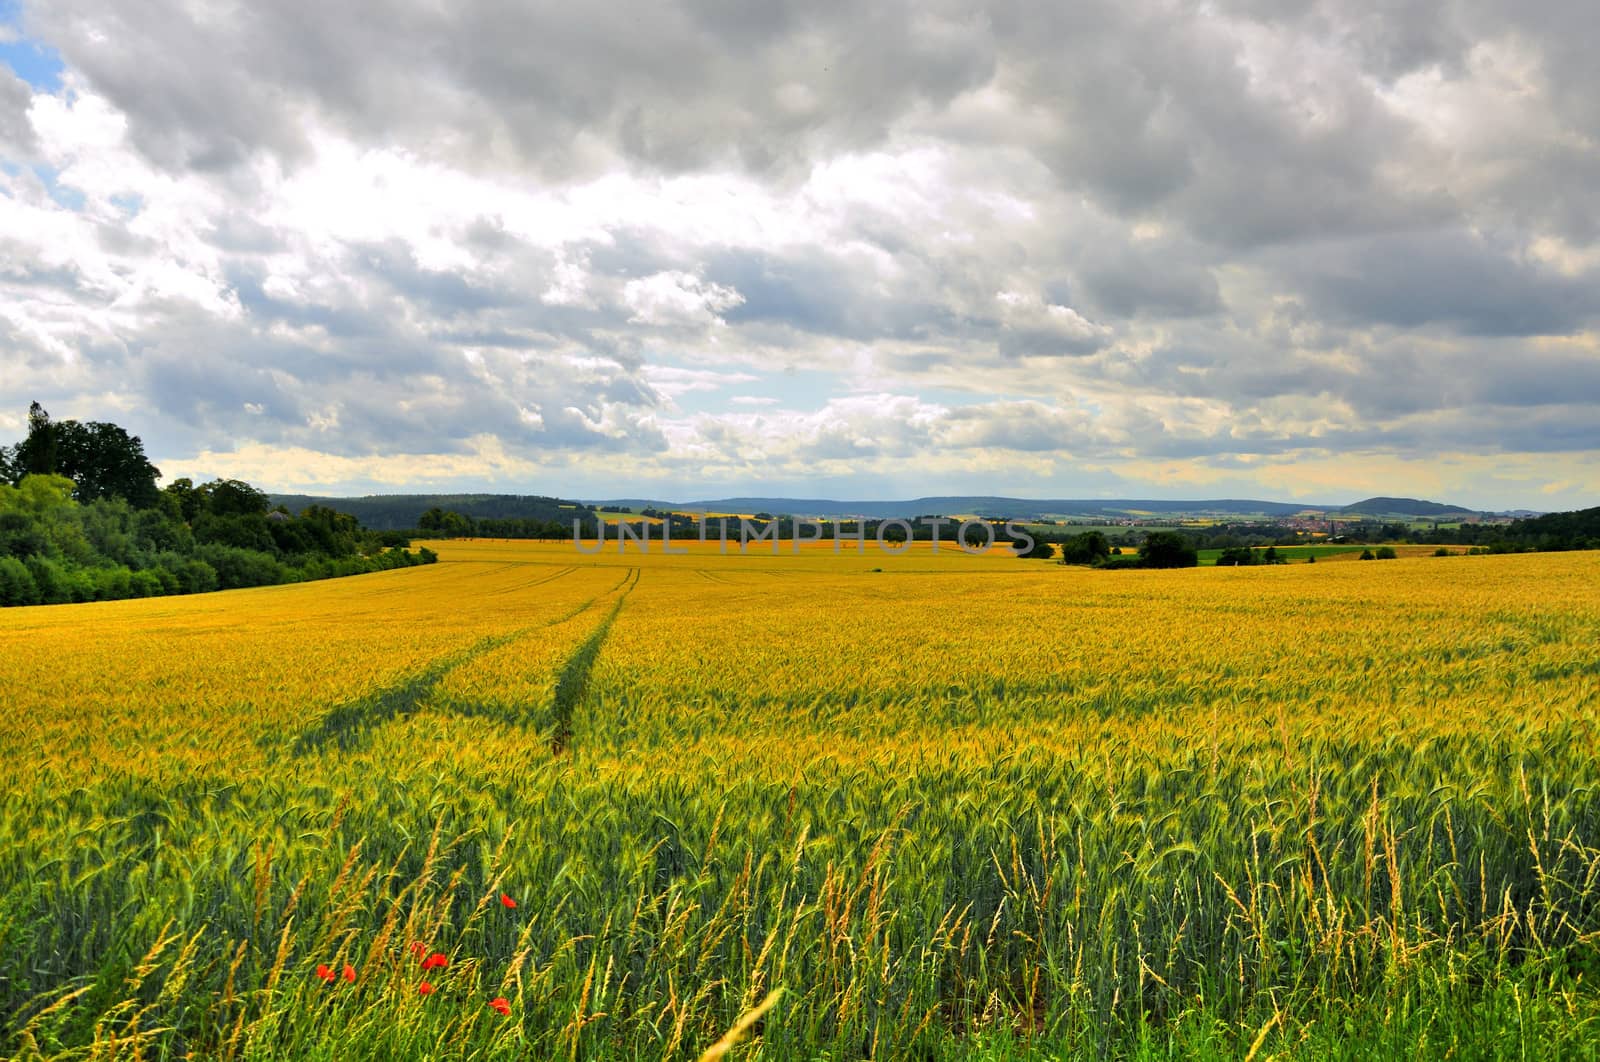 Beautiful landscape (fields) near Schloss Fasanarie in Fulda, Hessen, Germany